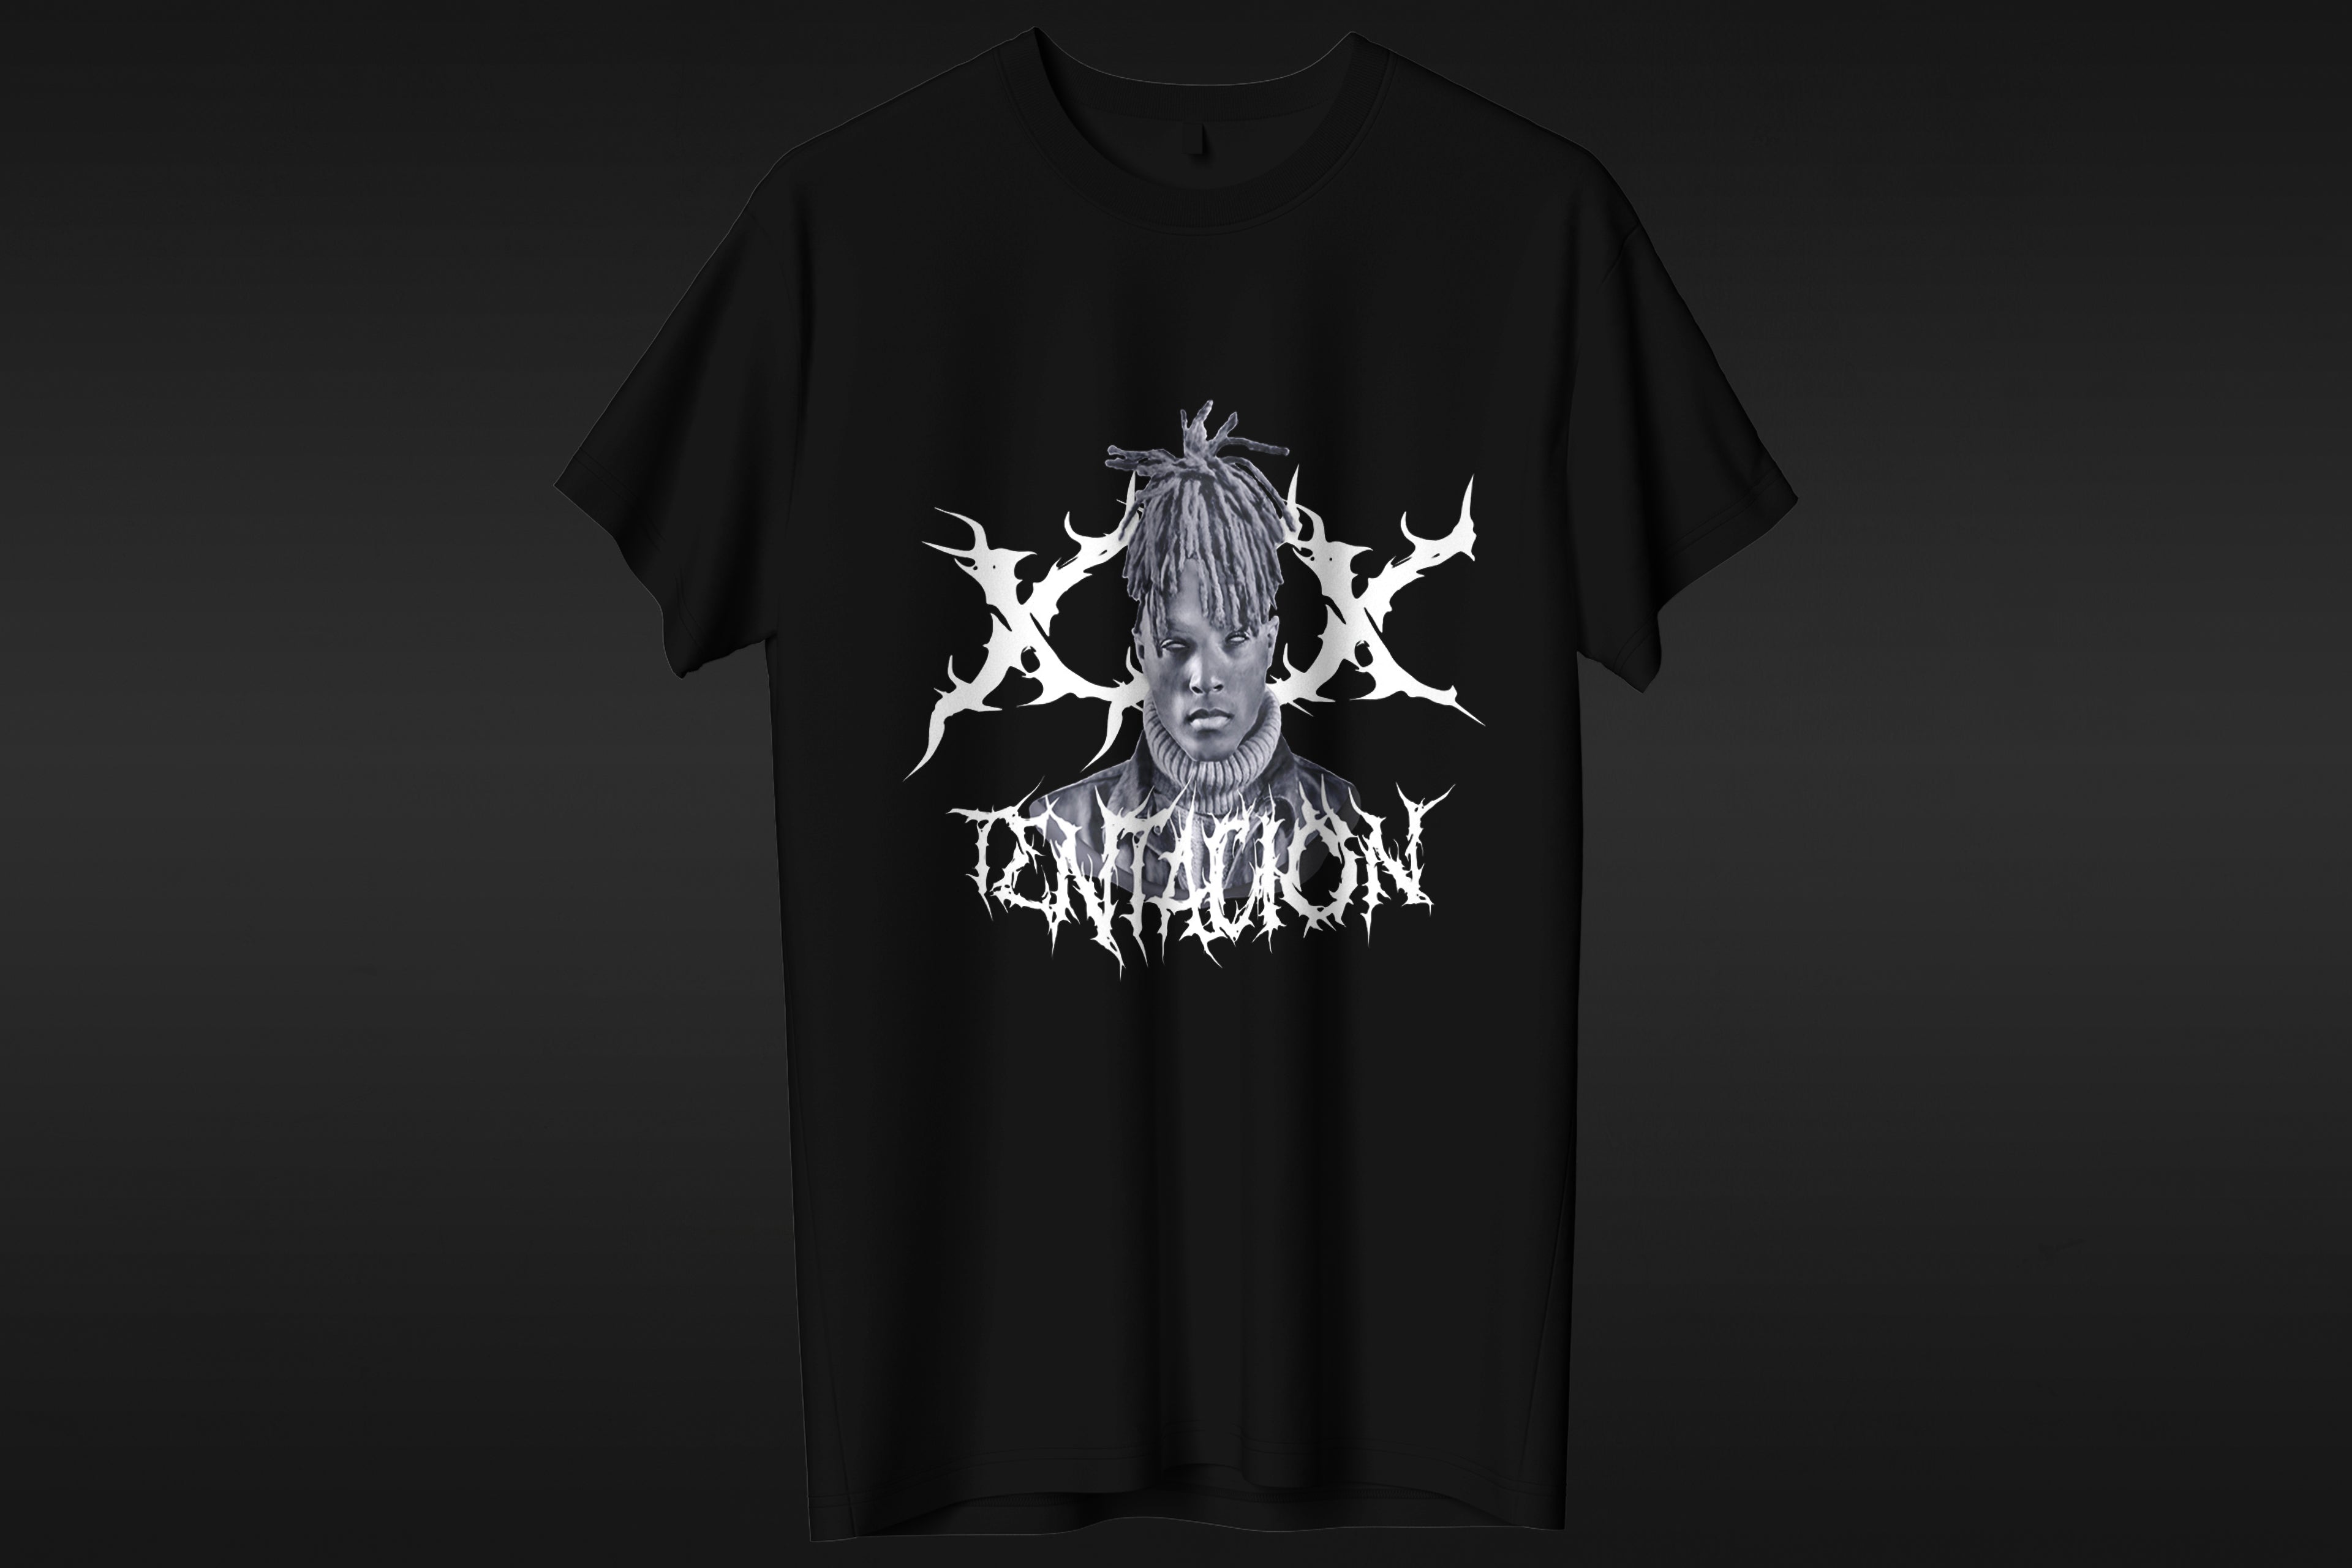 XXX Tentation - T-shirt